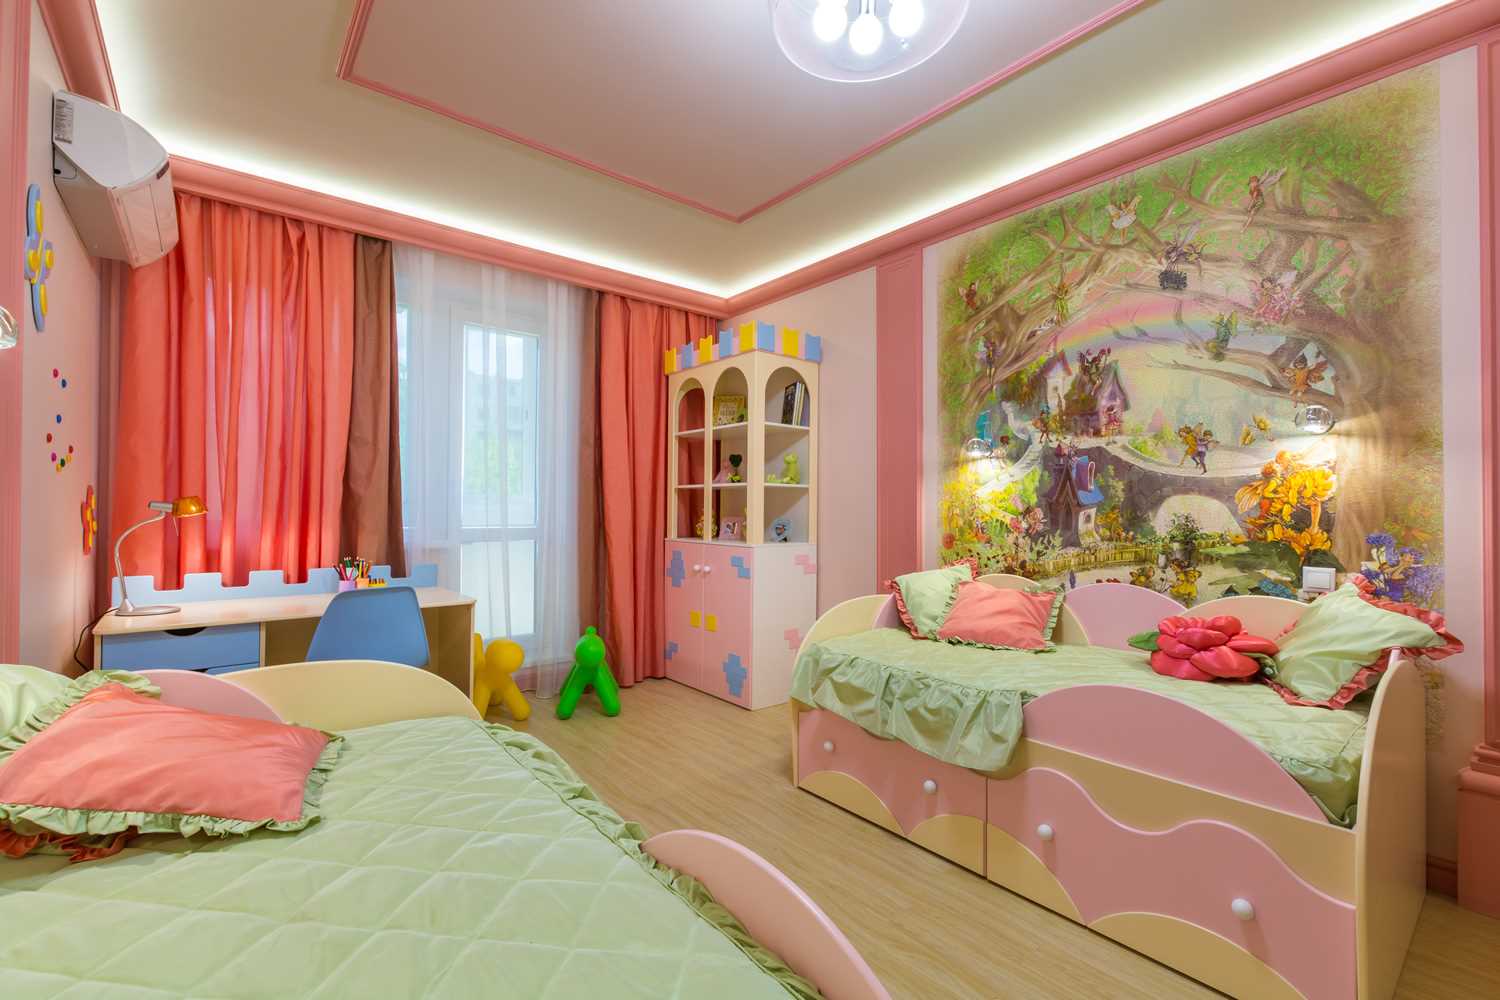 l'idea di un bellissimo design di una camera per bambini per due ragazze